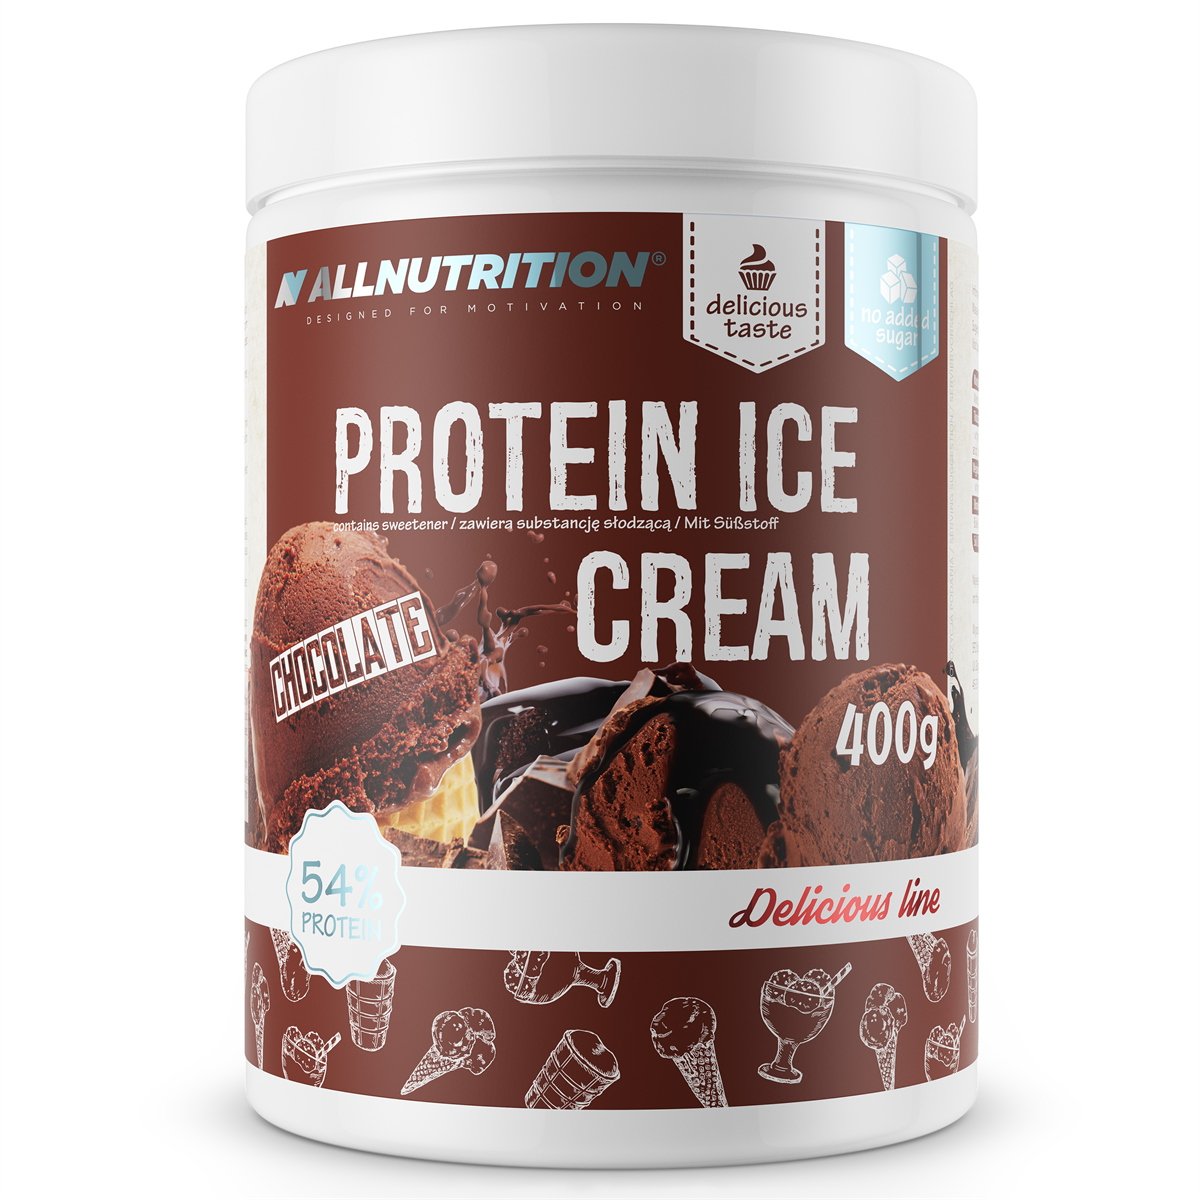 Заменитель питания AllNutrition Protein Ice Cream, 400 грамм Шоколад,  ml, AllNutrition. Sustitución de comidas. 